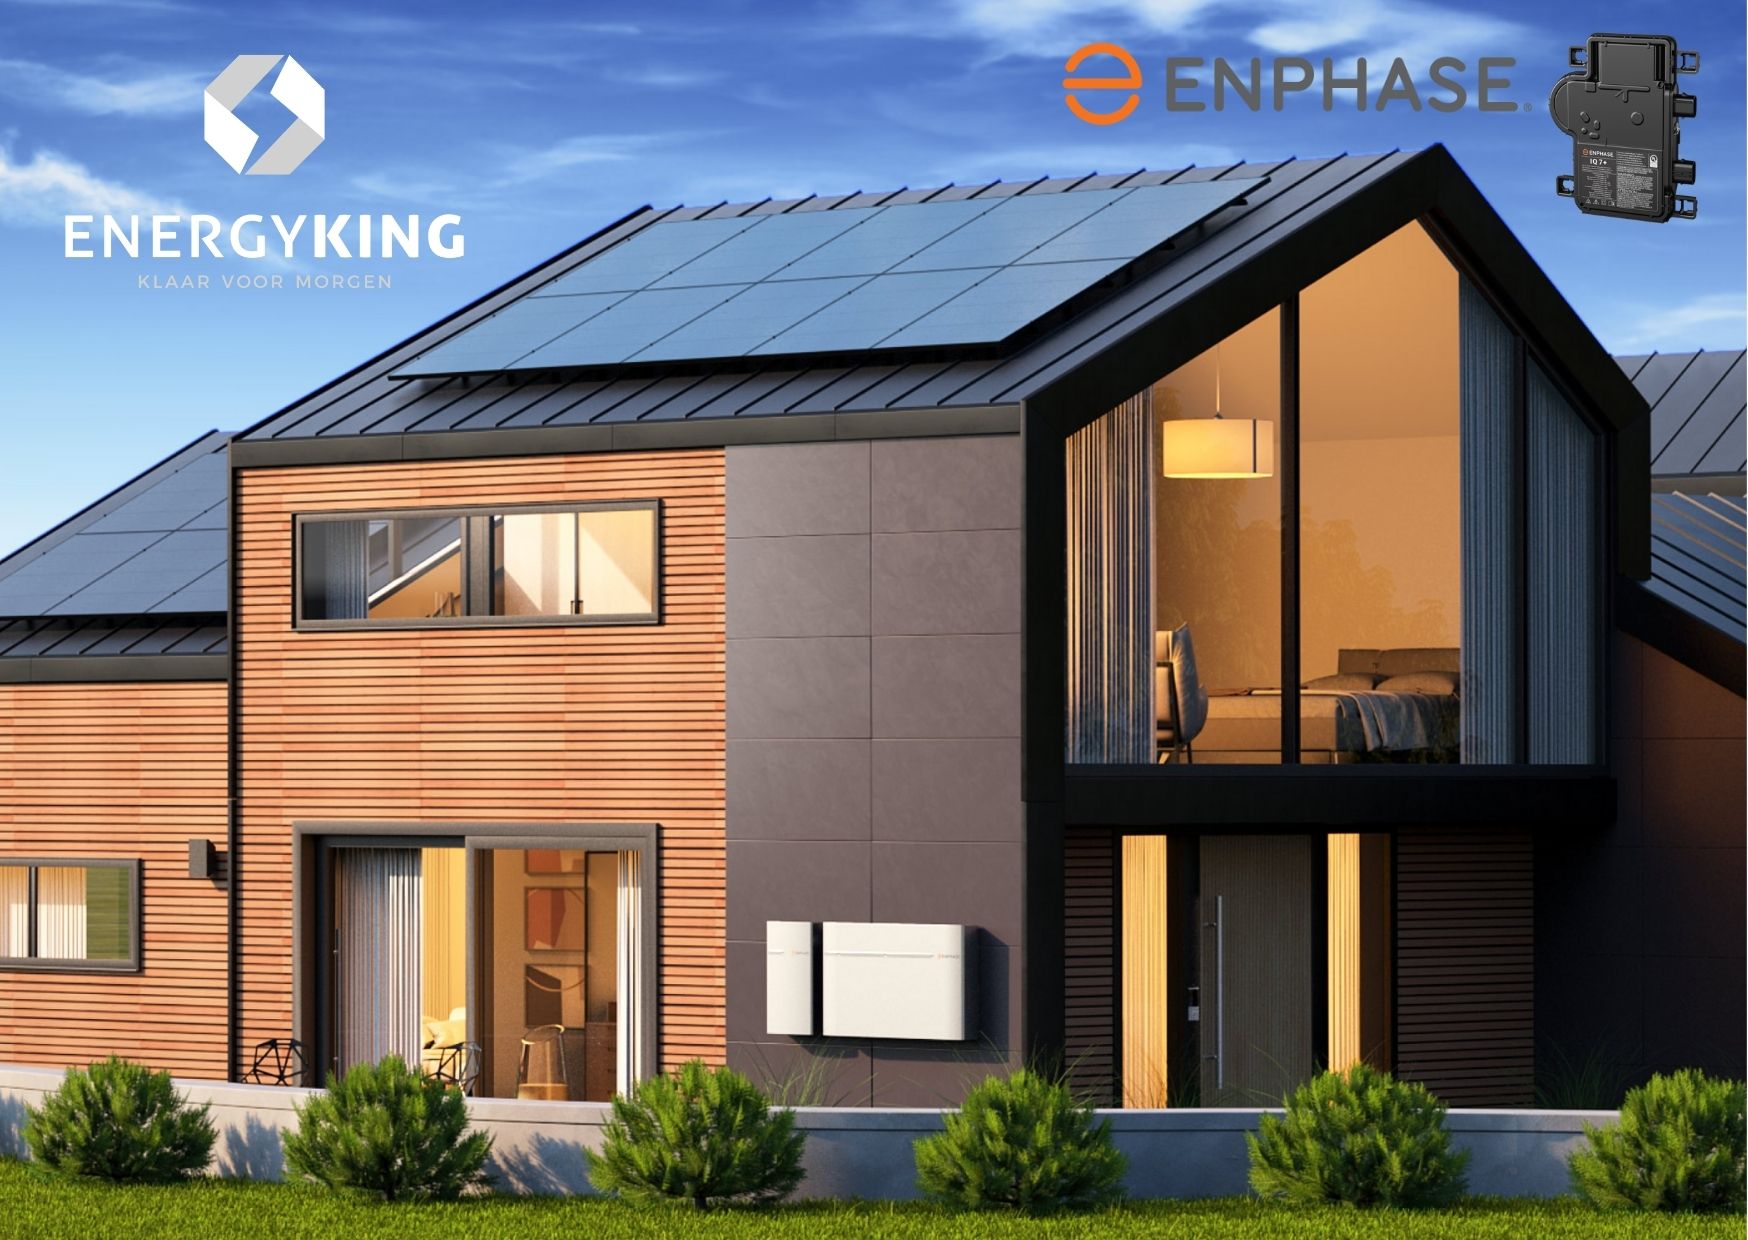 Maison équipée de panneaux solaires Enphase et de batteries Enphase